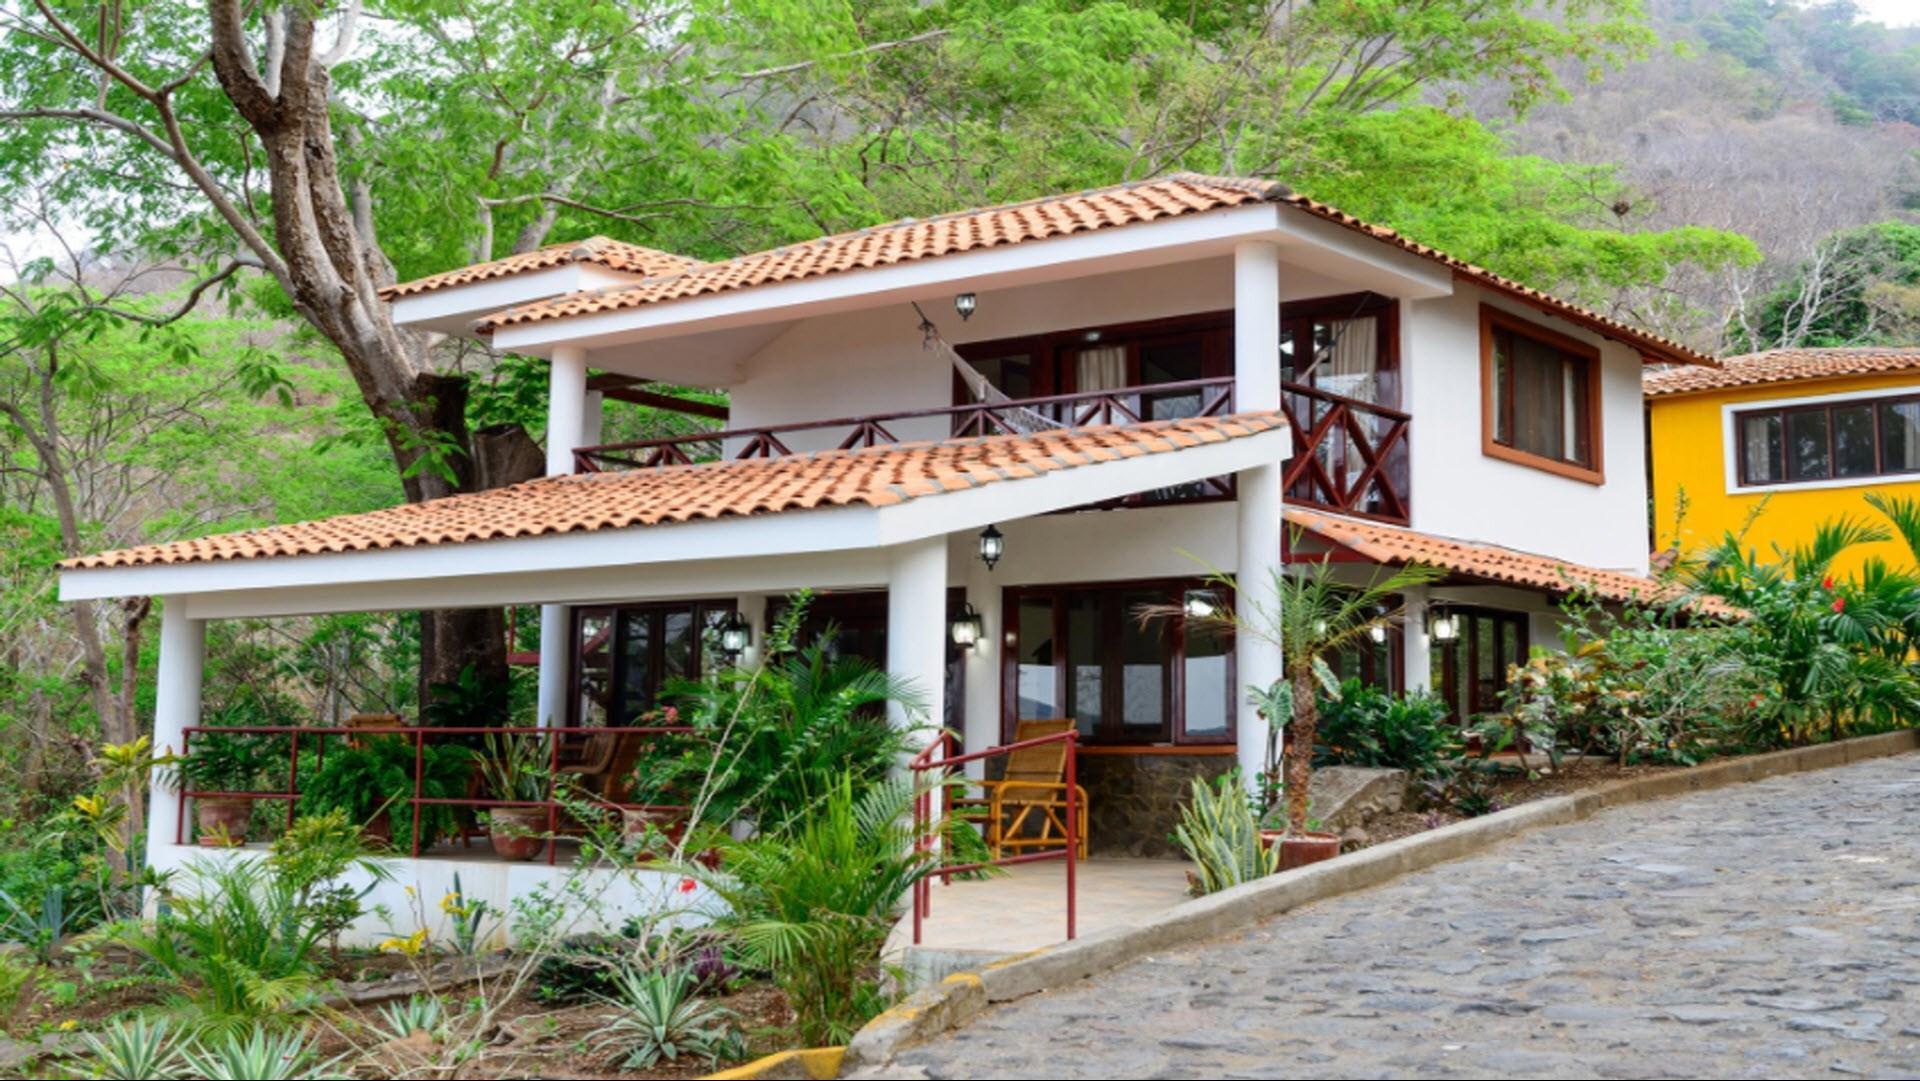 Apoyo Resort in Catarina, NI